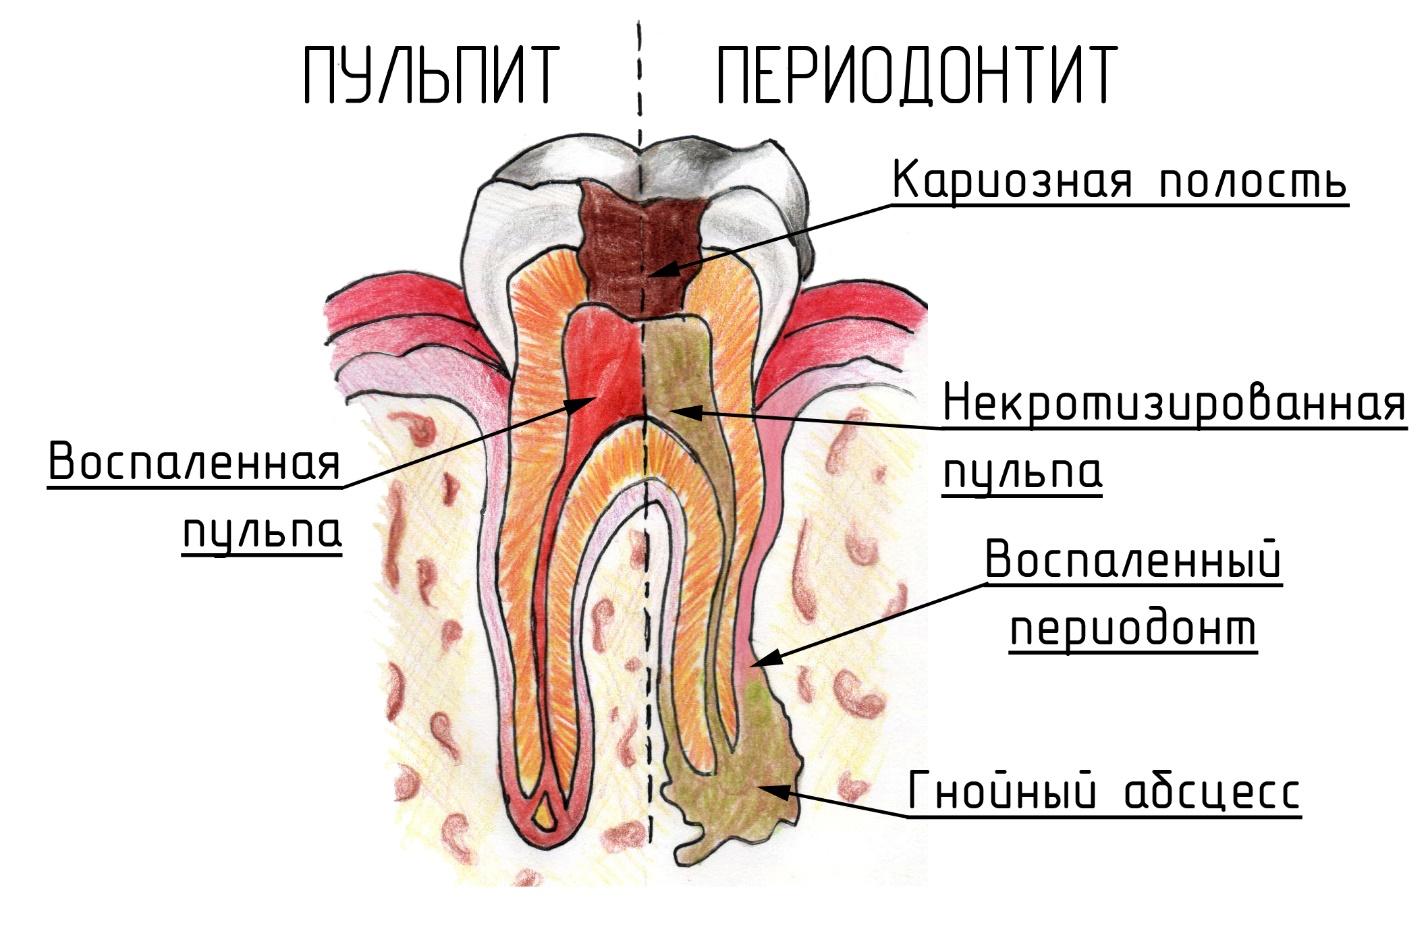 Особенности периодонтита зубов